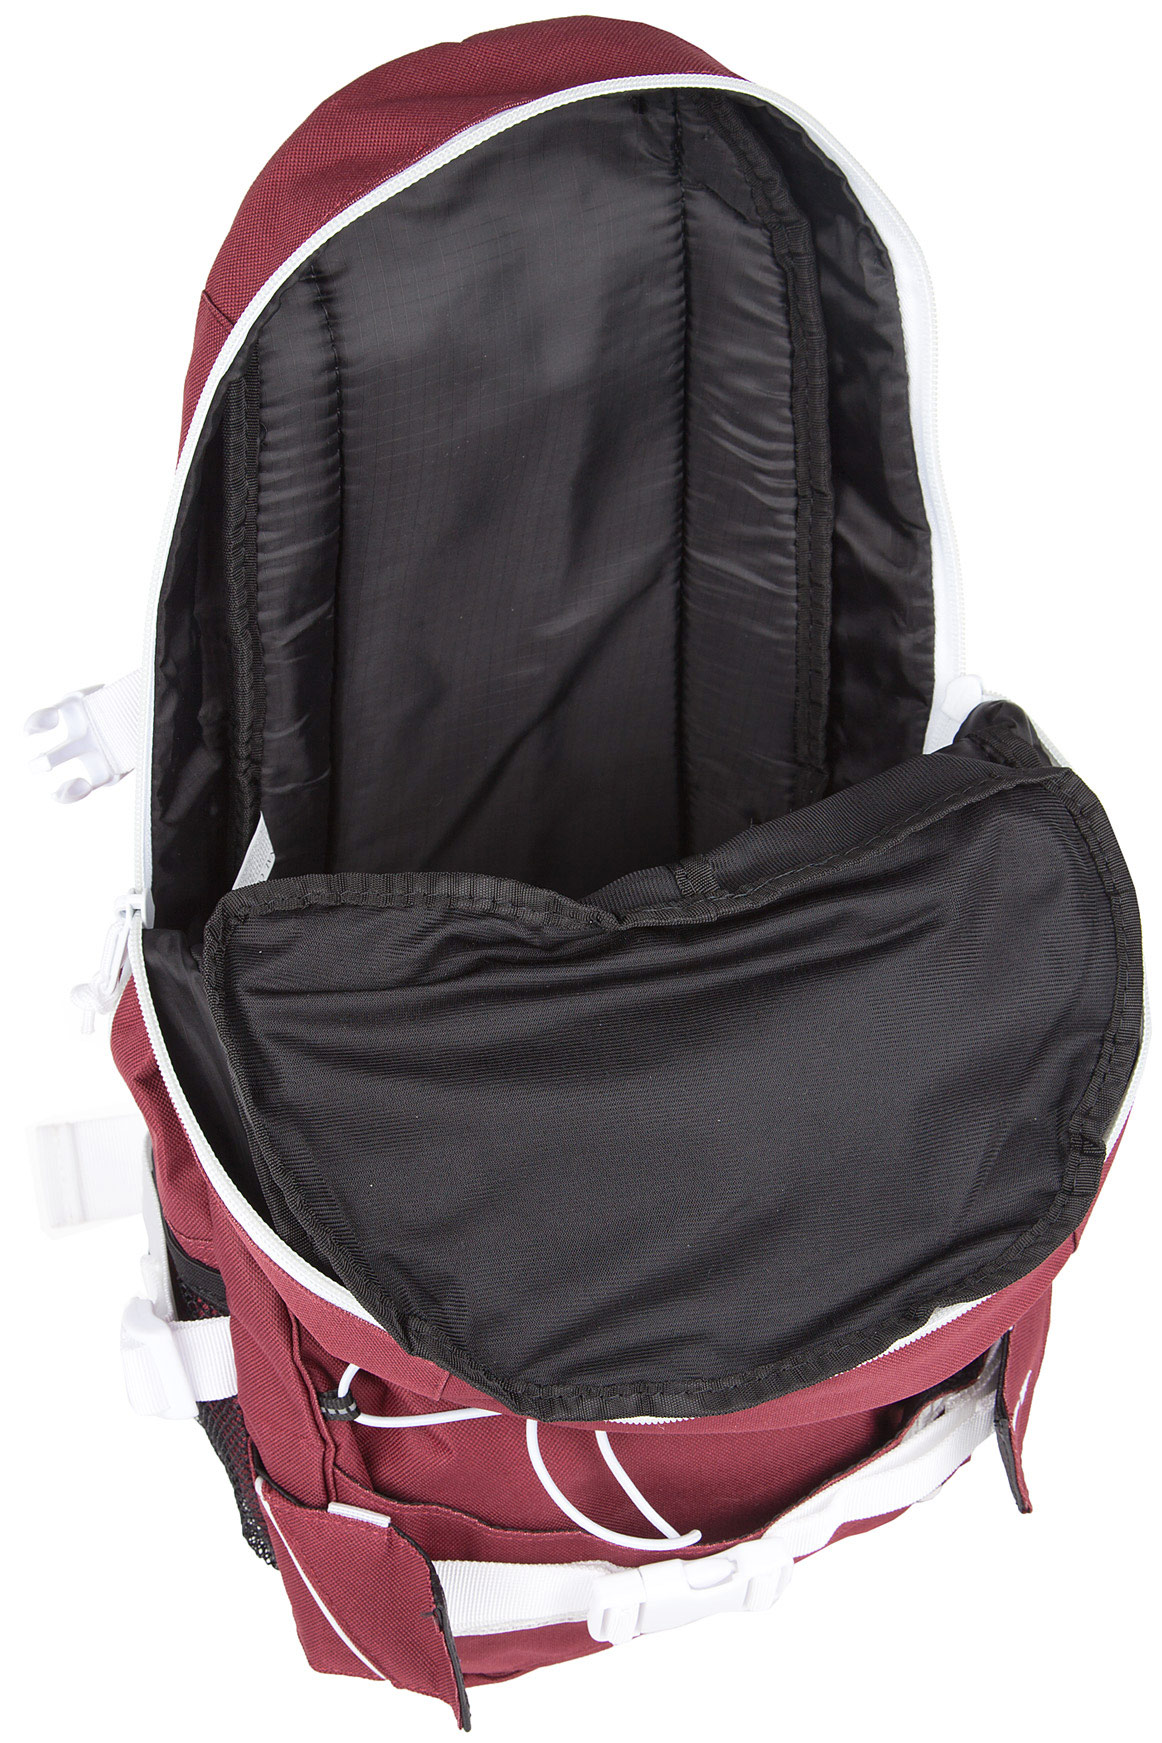 Forvert Ice Louis Backpack 20L (burgundy) buy at skatedeluxe